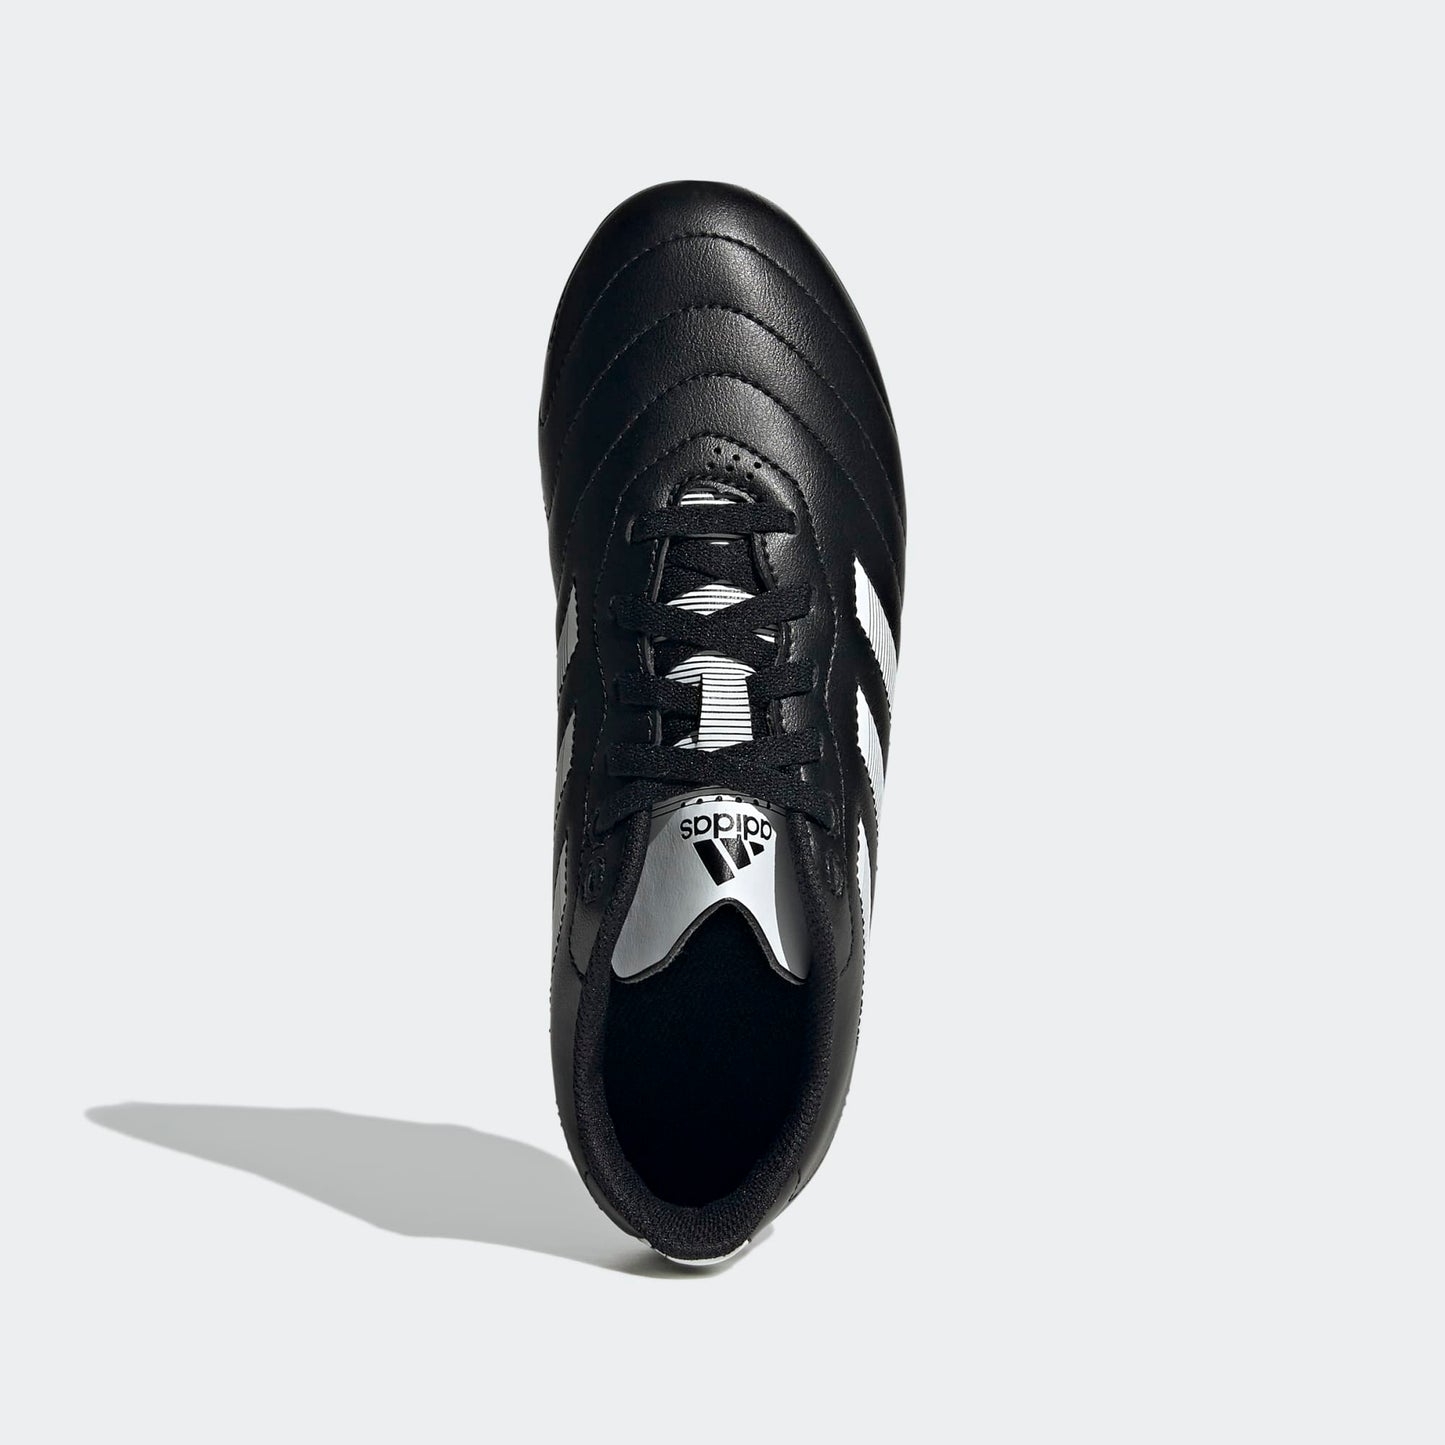 Adidas Goletto VIII Firm Ground Junior Boots - Black